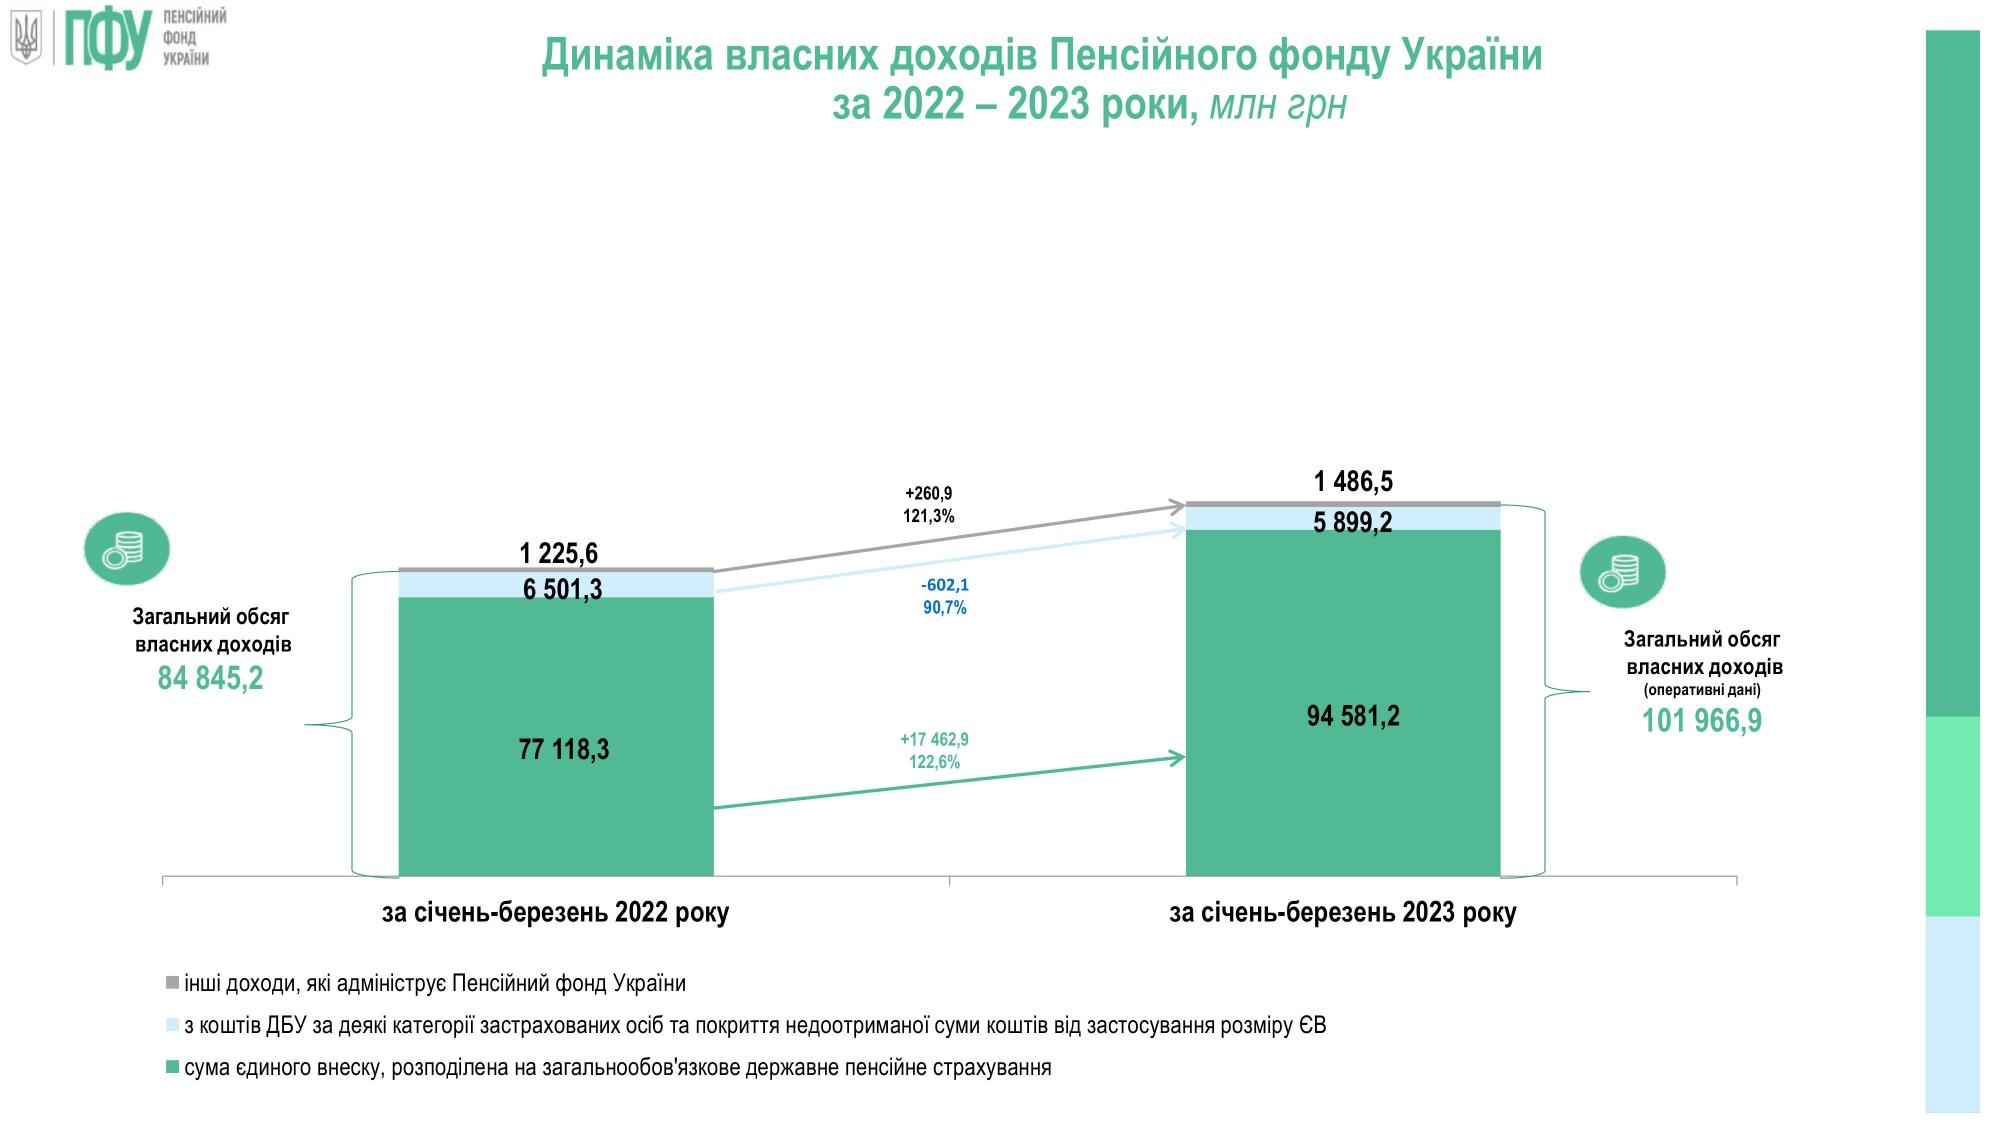 Доходы Пенсионного фонда Украины значительно выросли в 2023 году: что на это повлияло